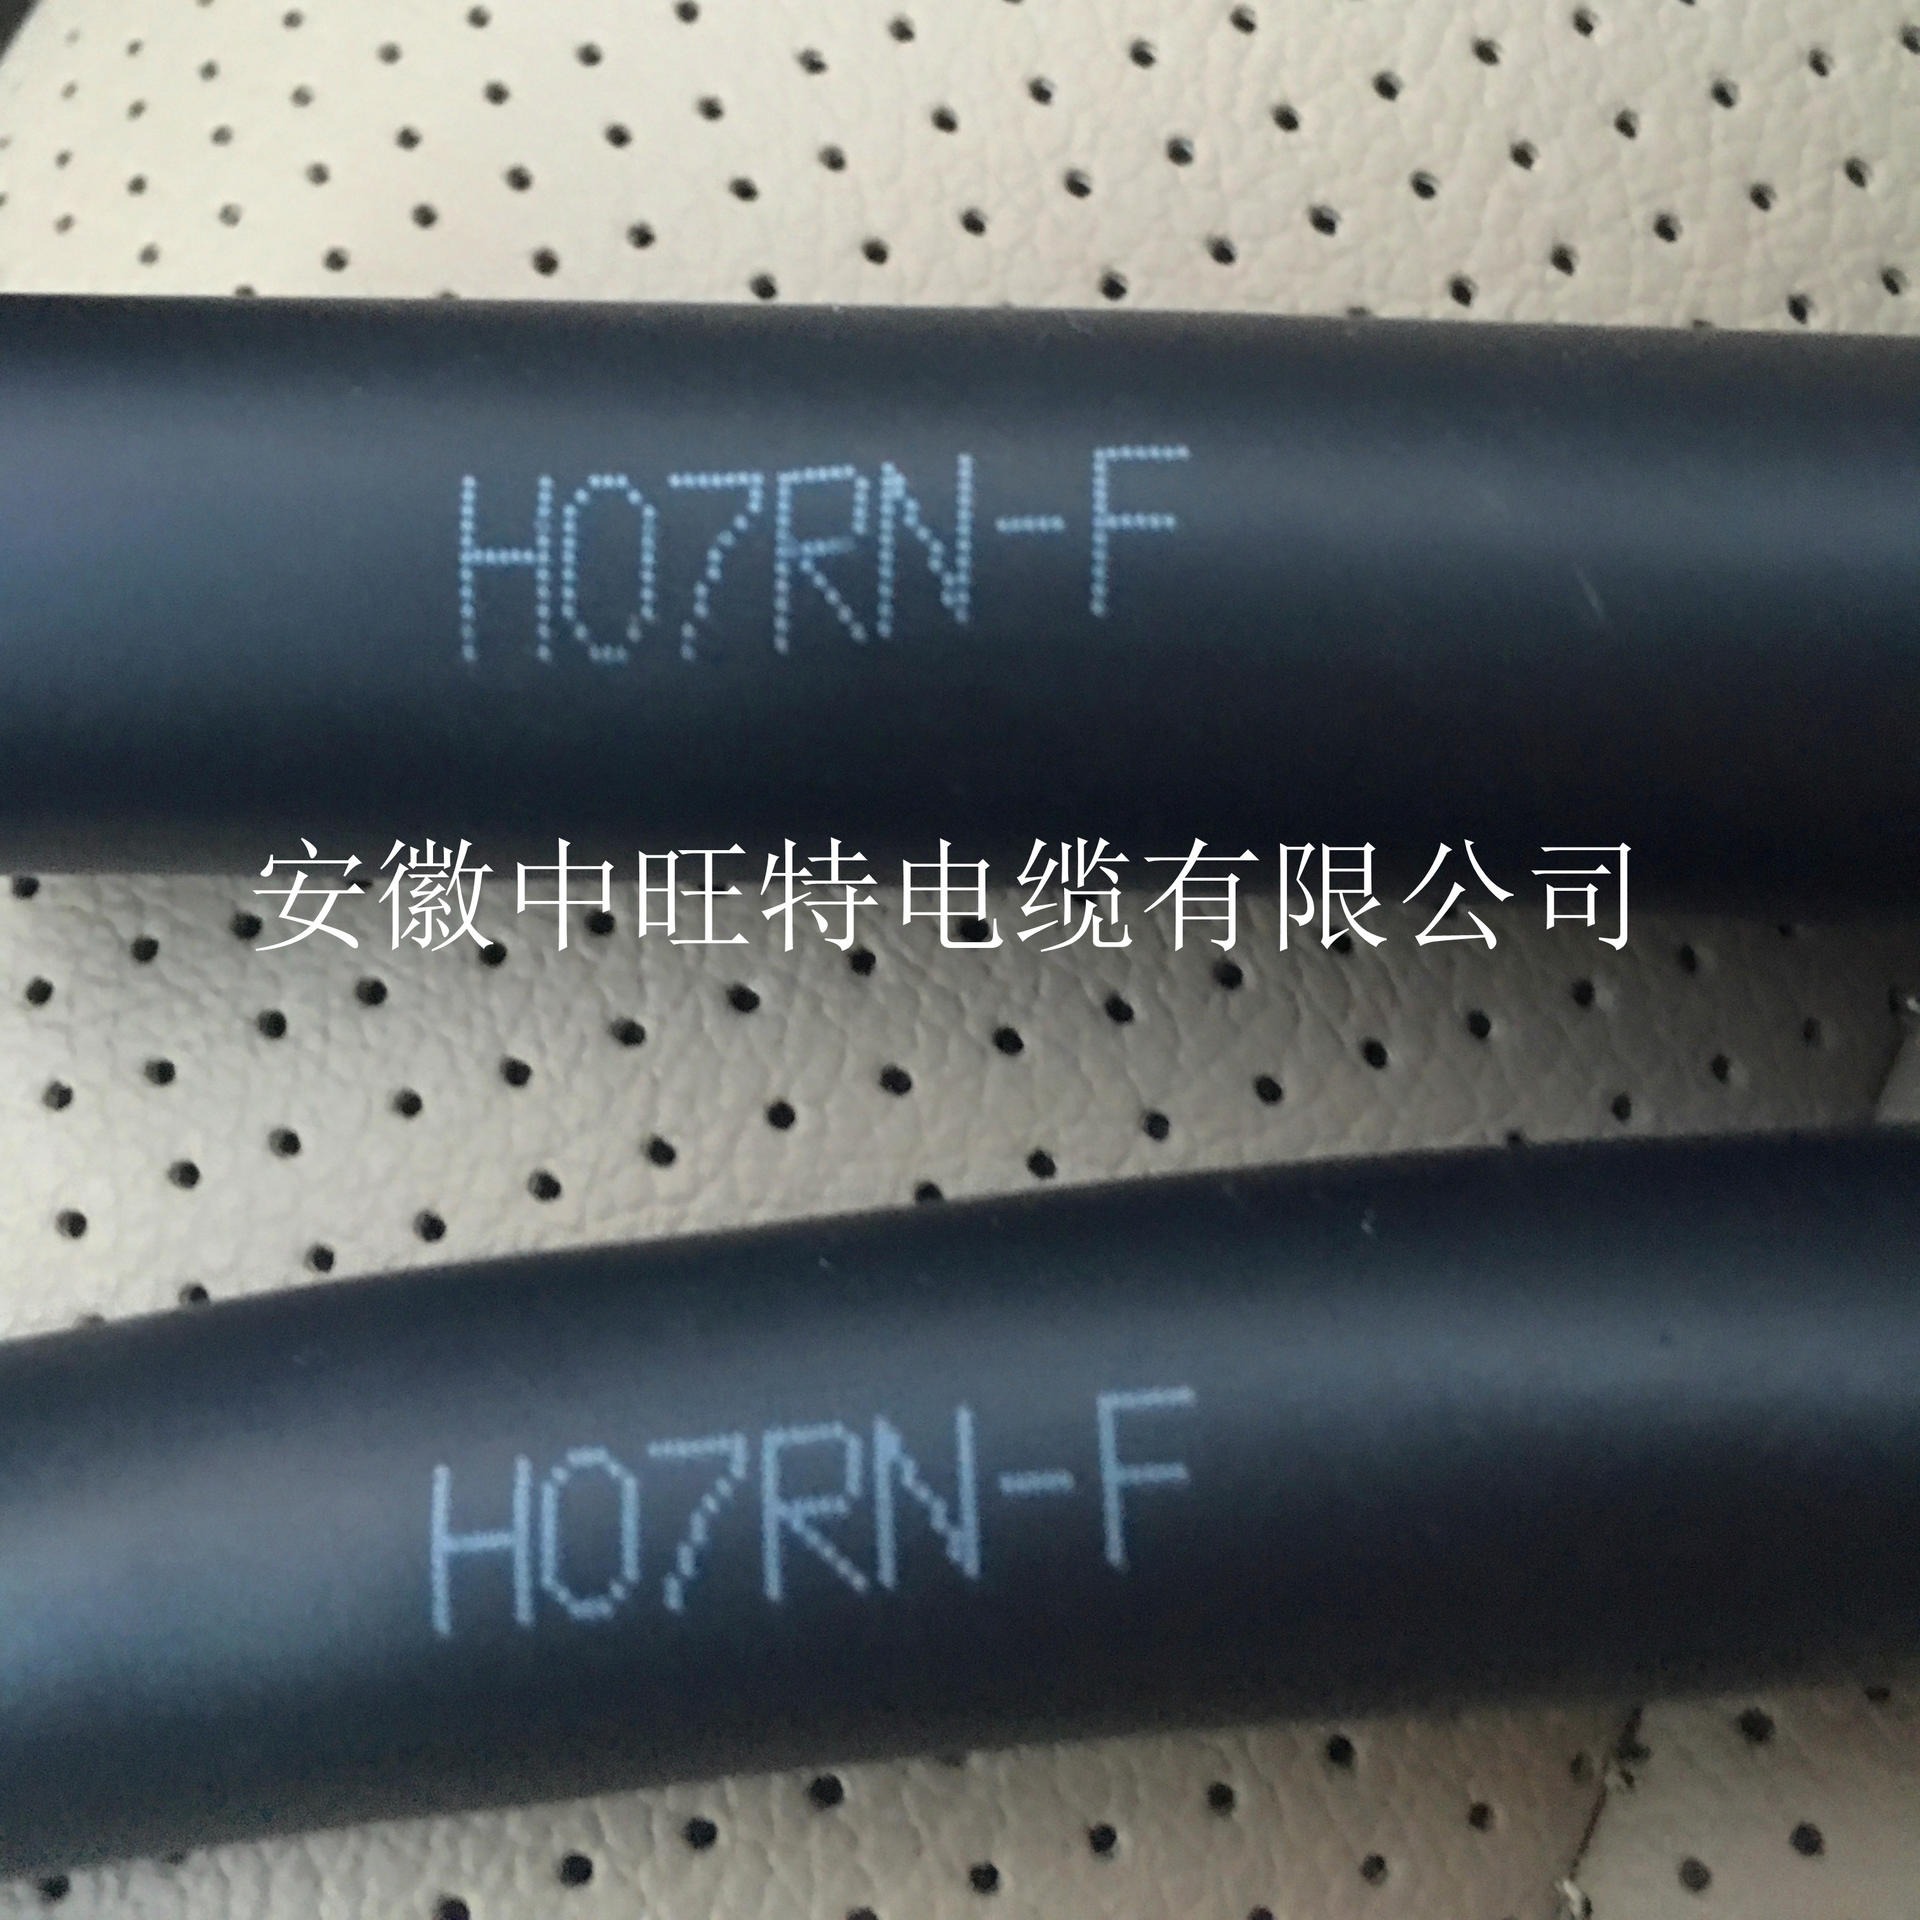 H07RN-F电缆 H07RN-F风能电缆 H07RN-F风力发电用电缆 厂家直销图片